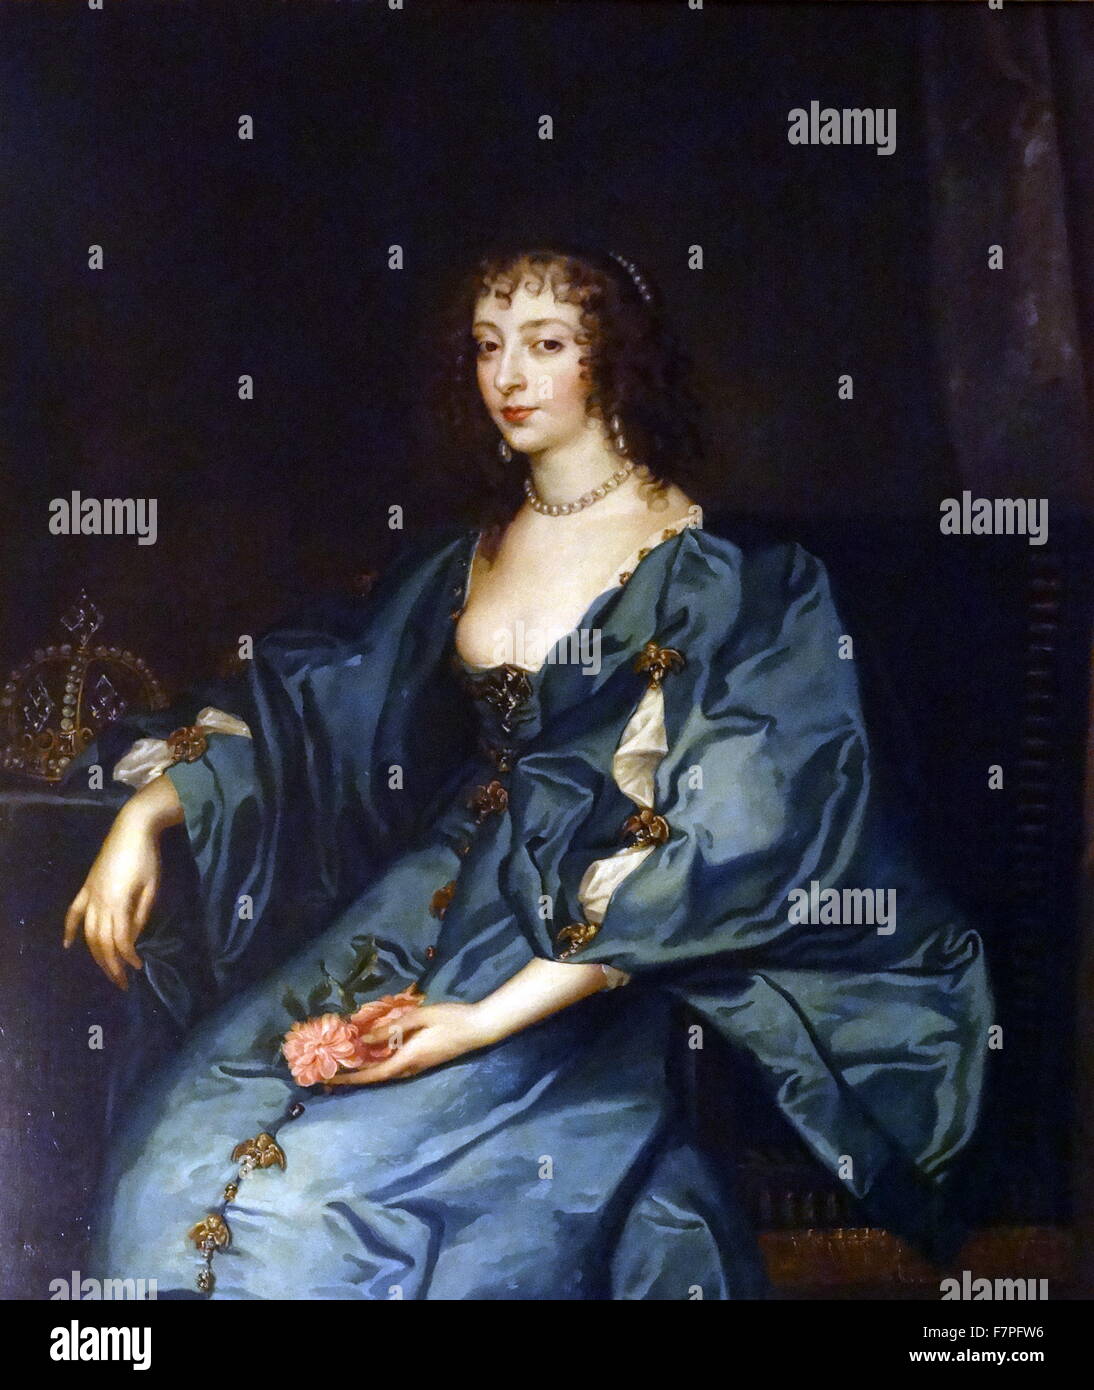 Porträt der Königin Henrietta Maria von Frankreich (1609 – 1669) Queen consort von England, Schottland und Irland als die Frau von König Charles ich. Von Anthony van Dyck (1599-1641) flämischen Barock-Künstler. Vom 17. Jahrhundert Stockfoto